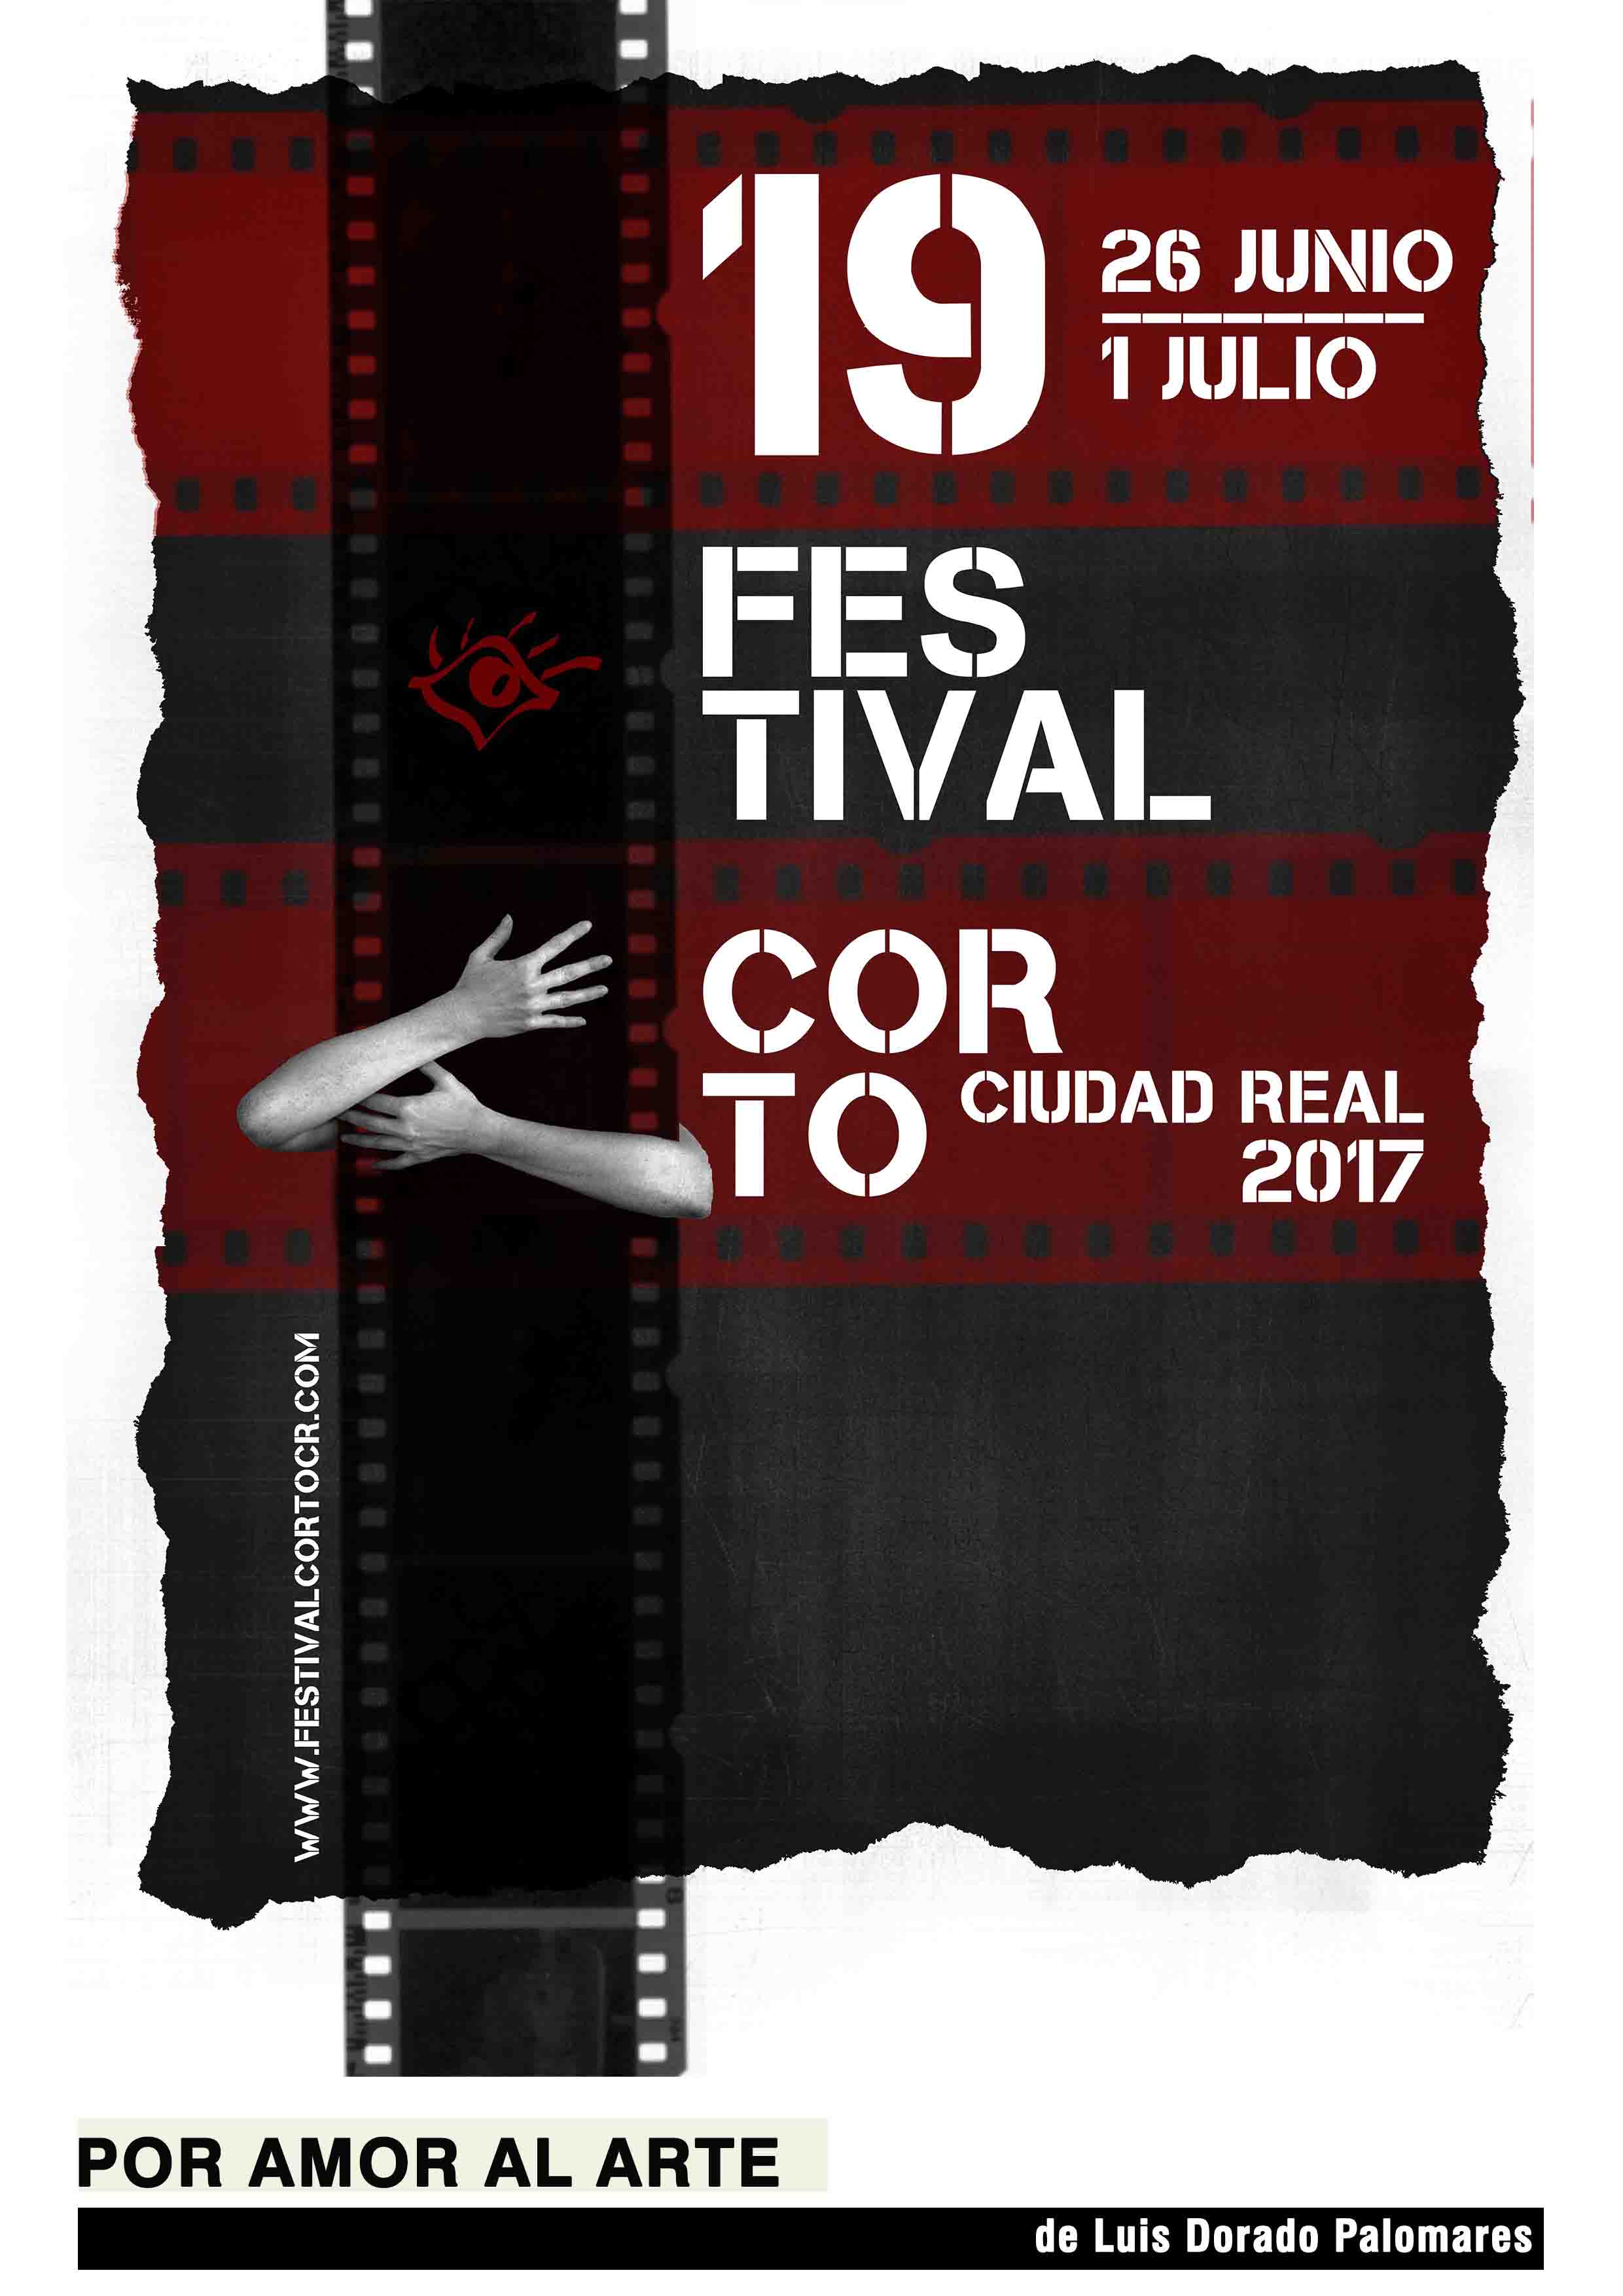 Inicio - Festival Corto Ciudad Real